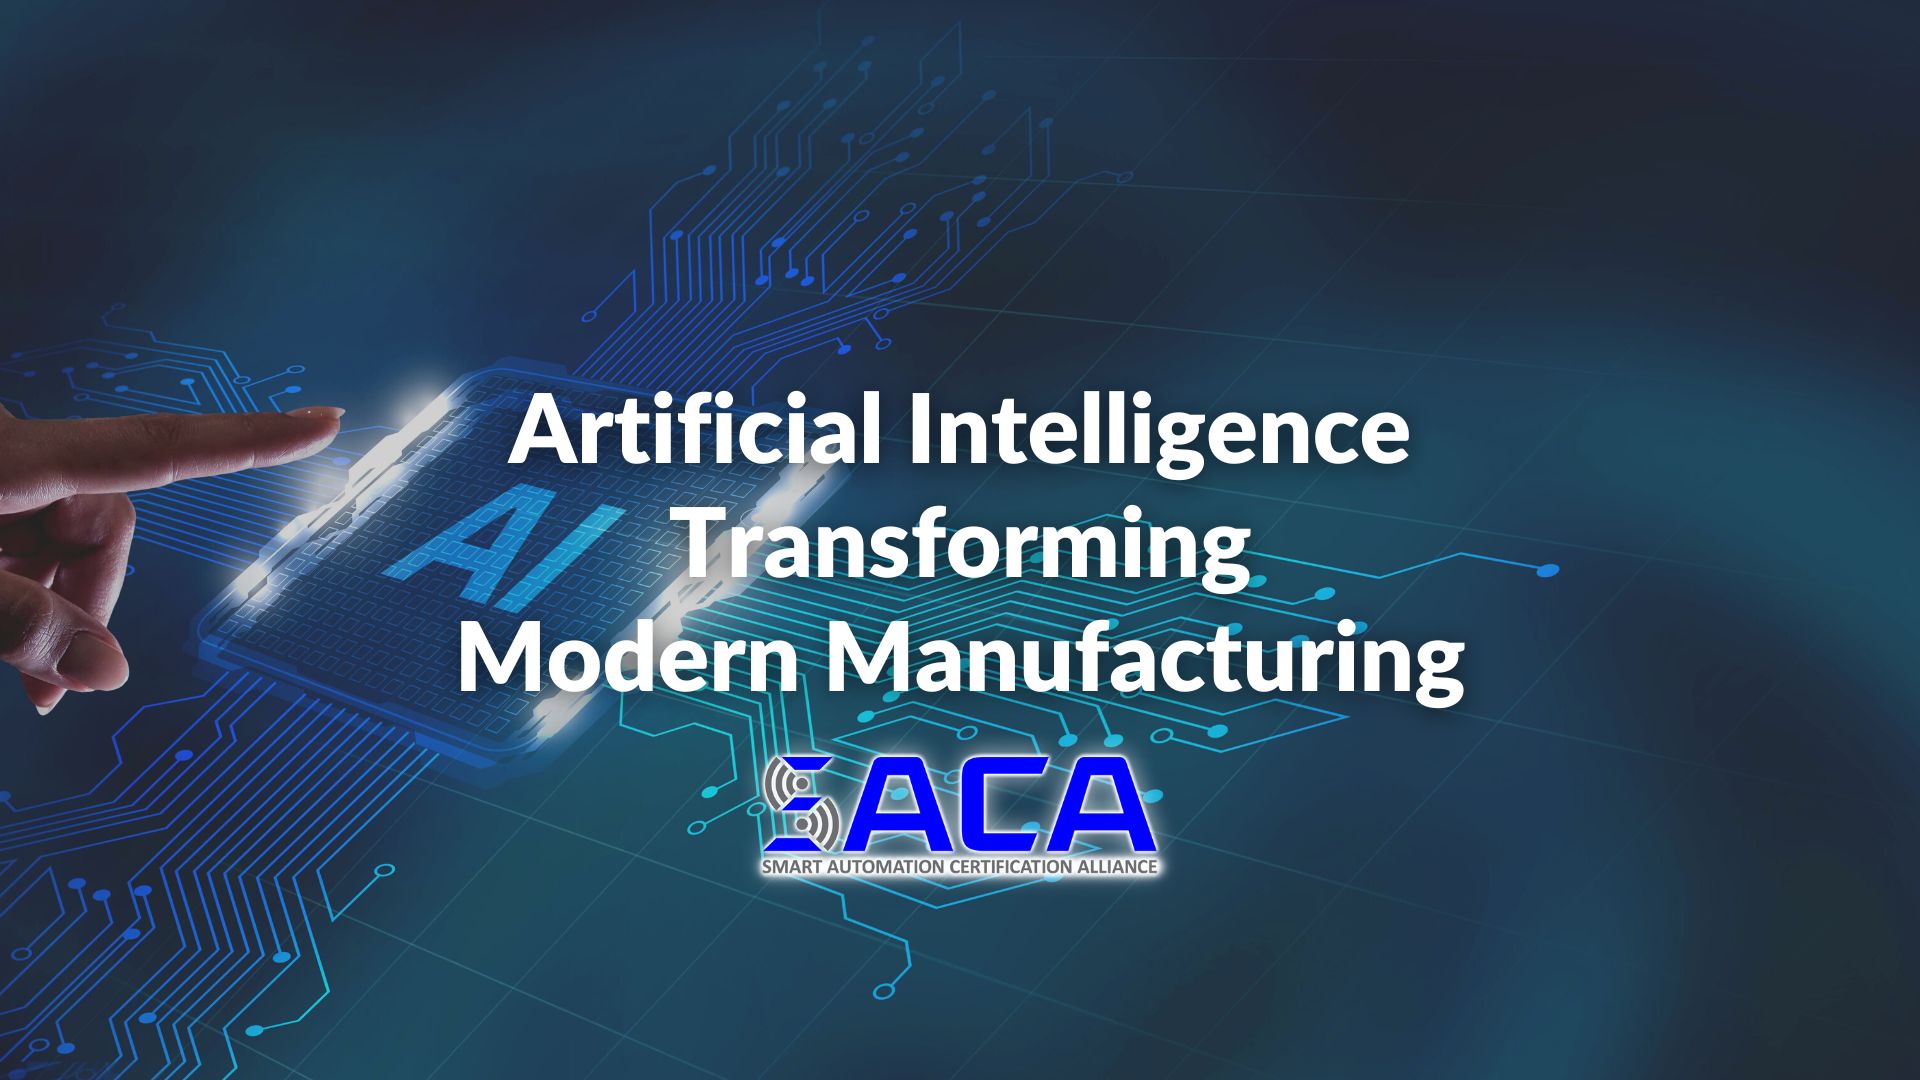 SACA - Artificial Intelligence Transforming Modern Manufacturing